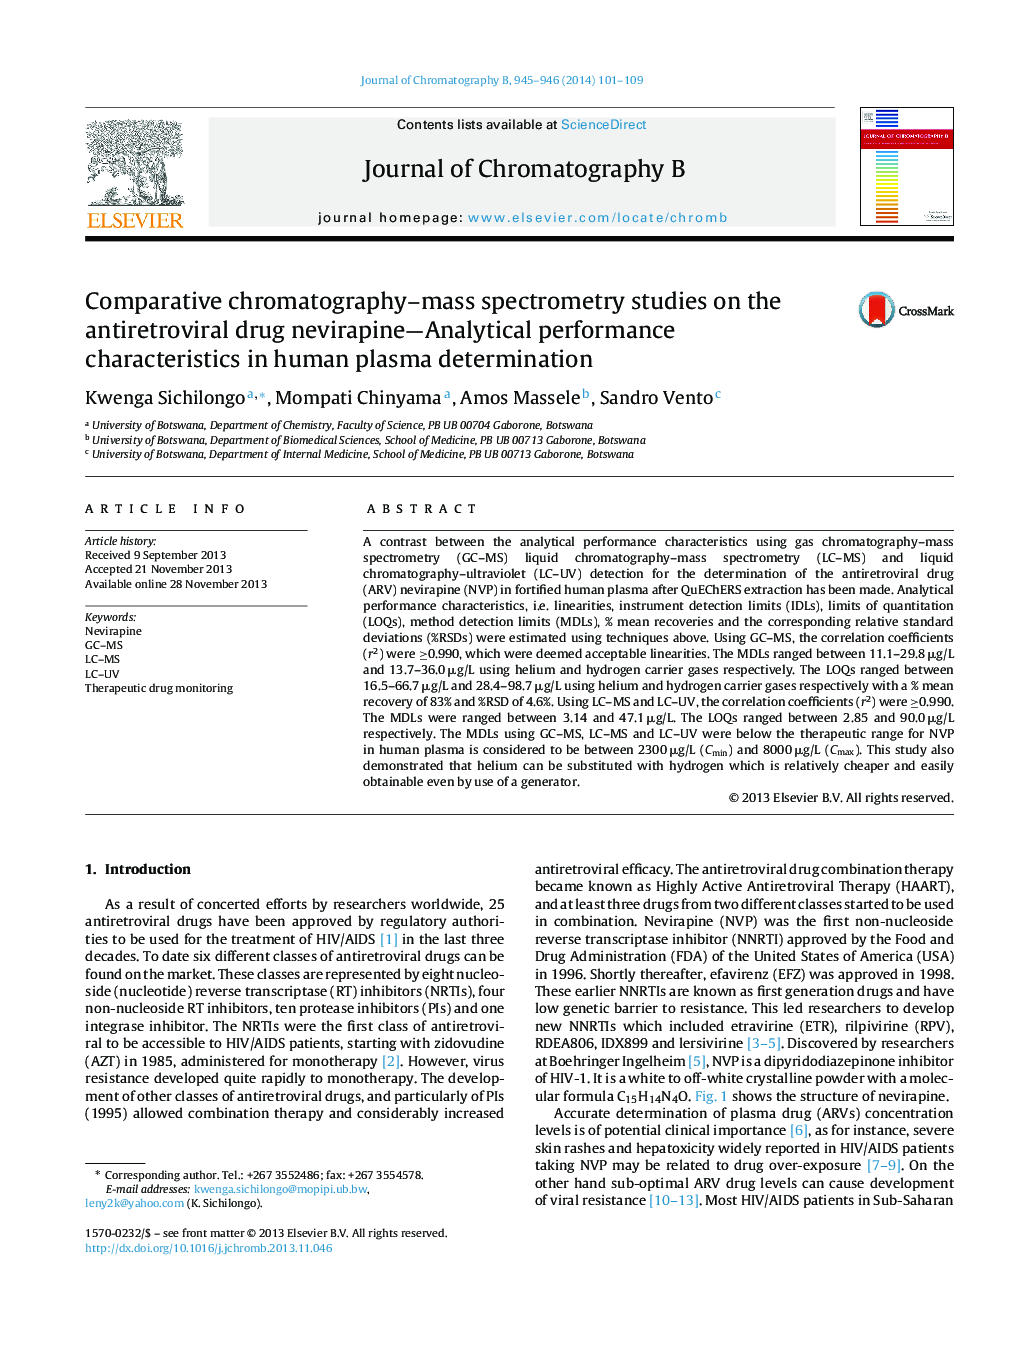 مطالعات اسپکترومتری جرمی کروماتوگرافی مقایسهای بر روی داروهای ضد رتروویروسی نویارپینا. ویژگیهای عملکرد تحلیلی در تعیین پلاسمای انسانی 